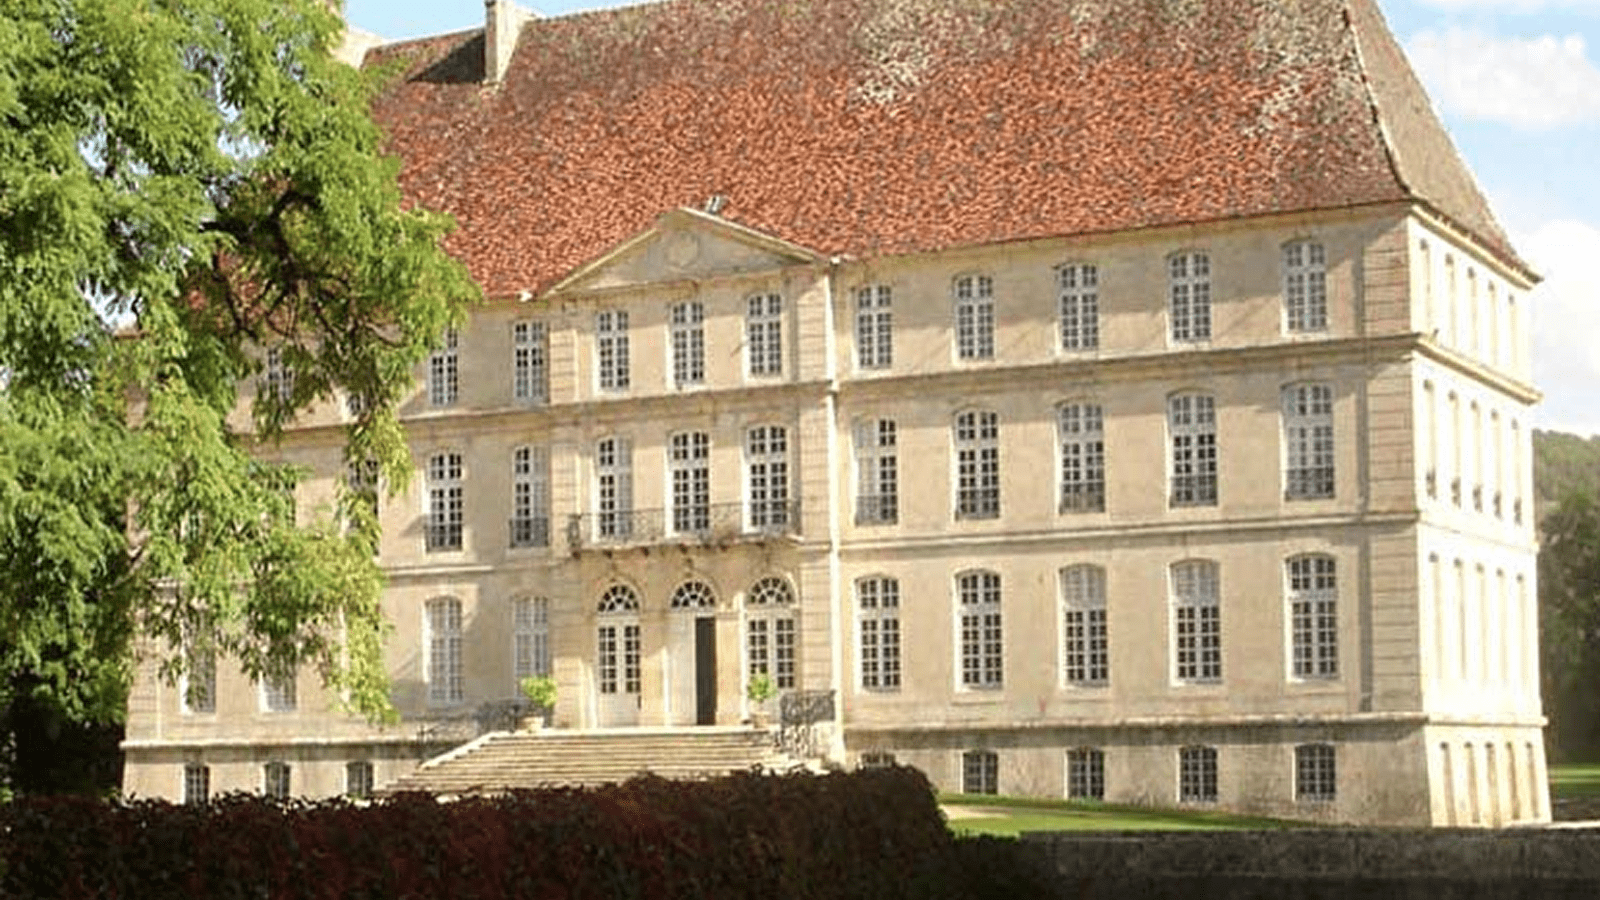 Château de Thenissey